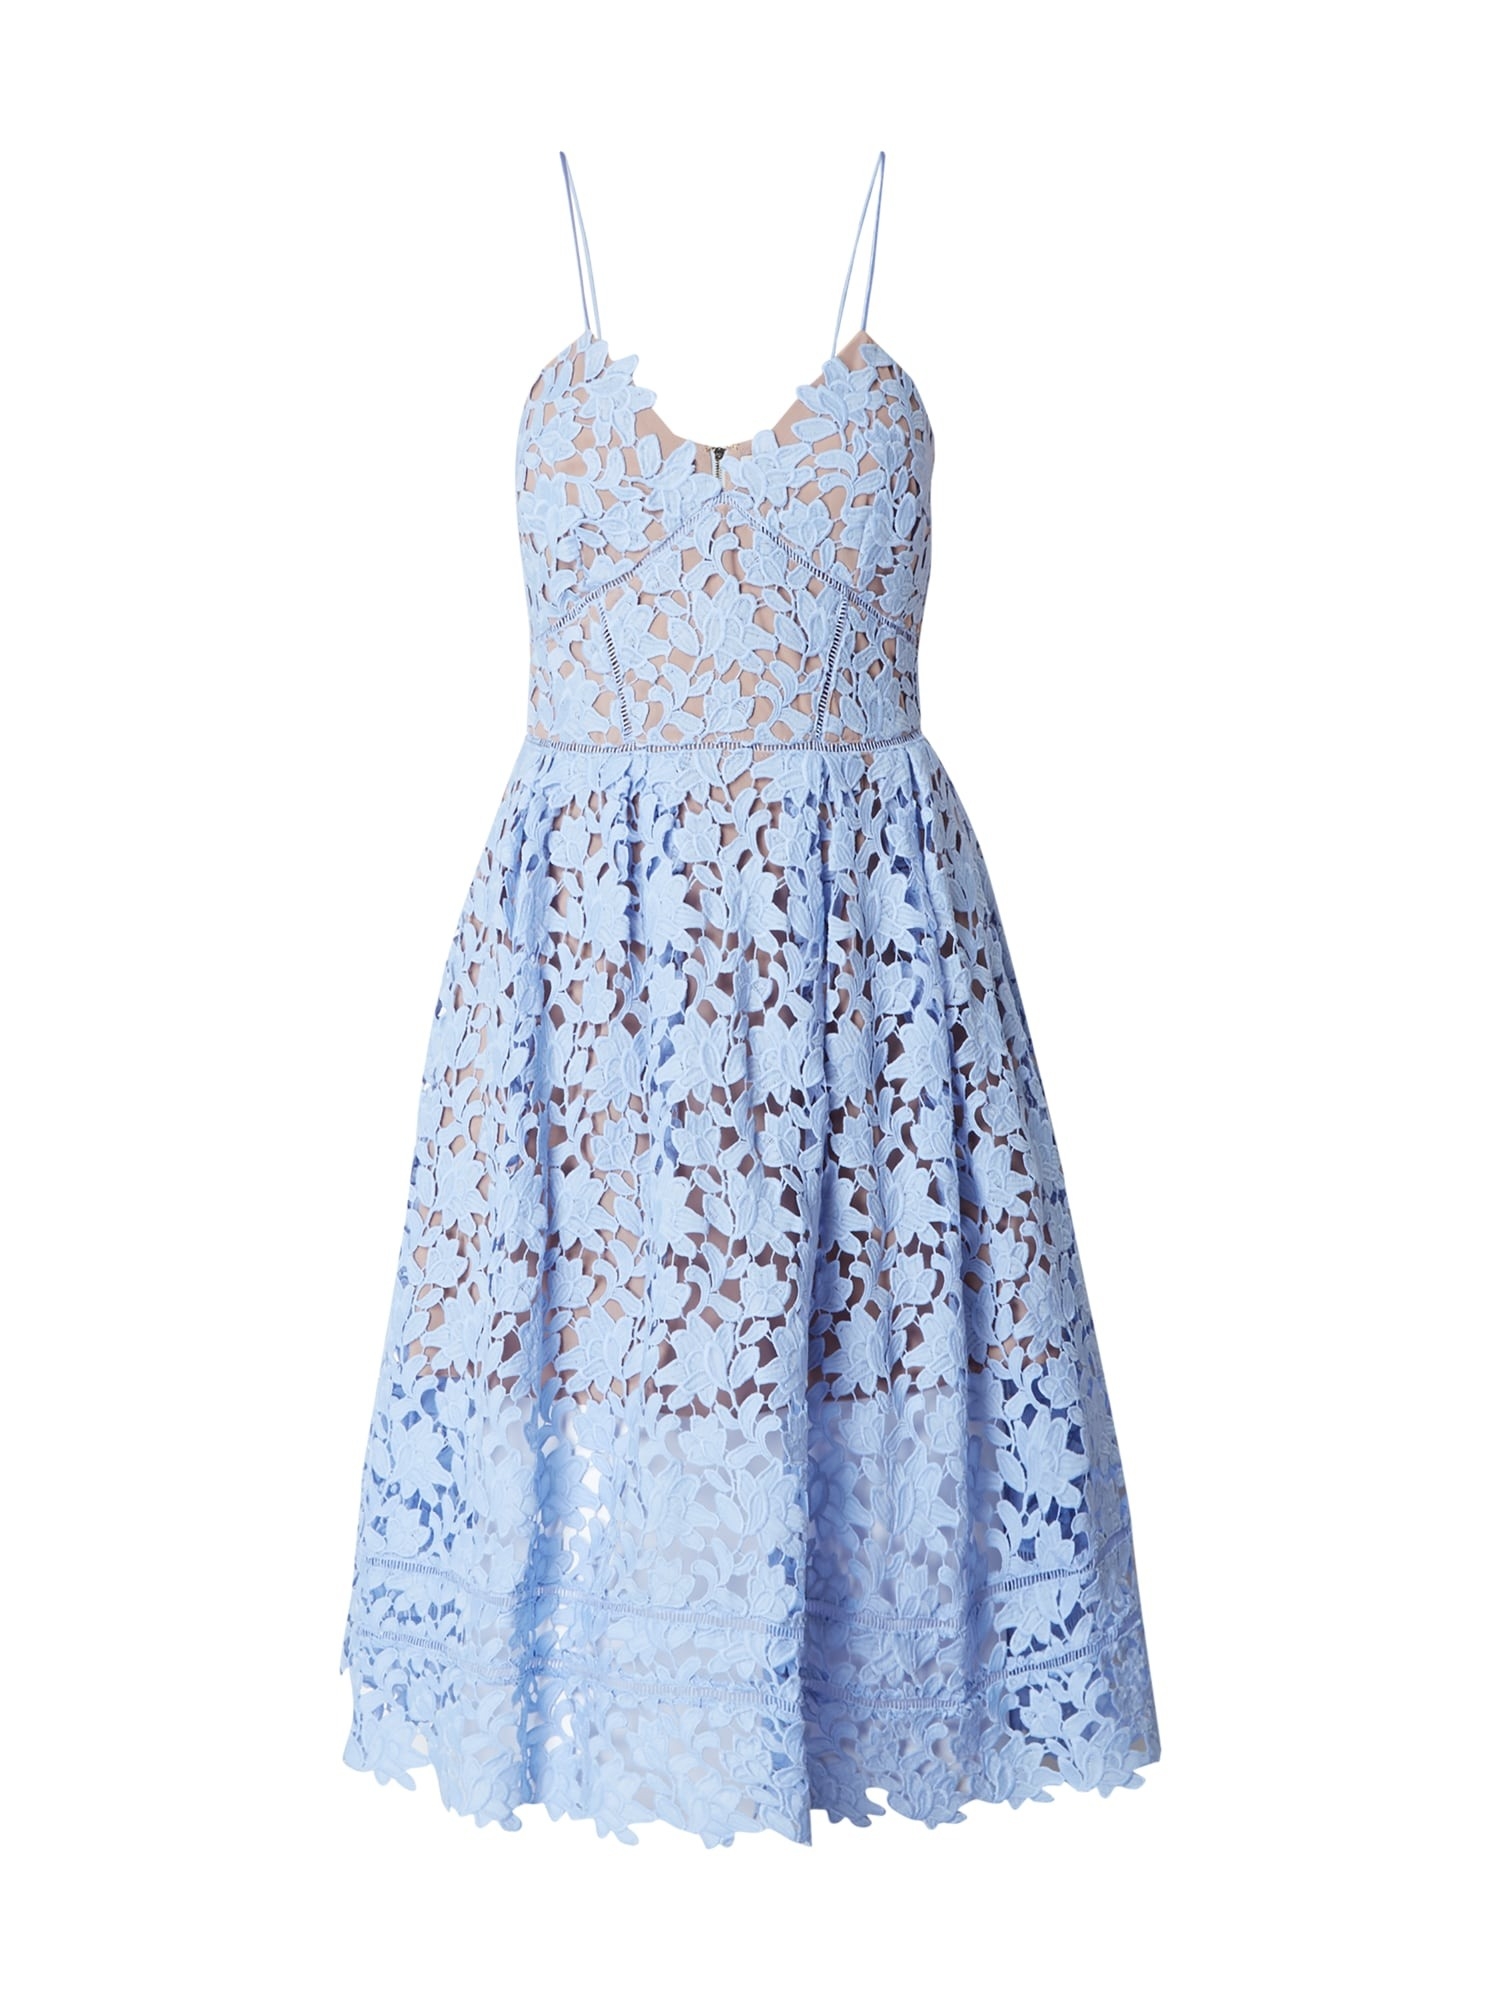 Abend Luxurius Kleid Hellblau VertriebFormal Luxurius Kleid Hellblau für 2019